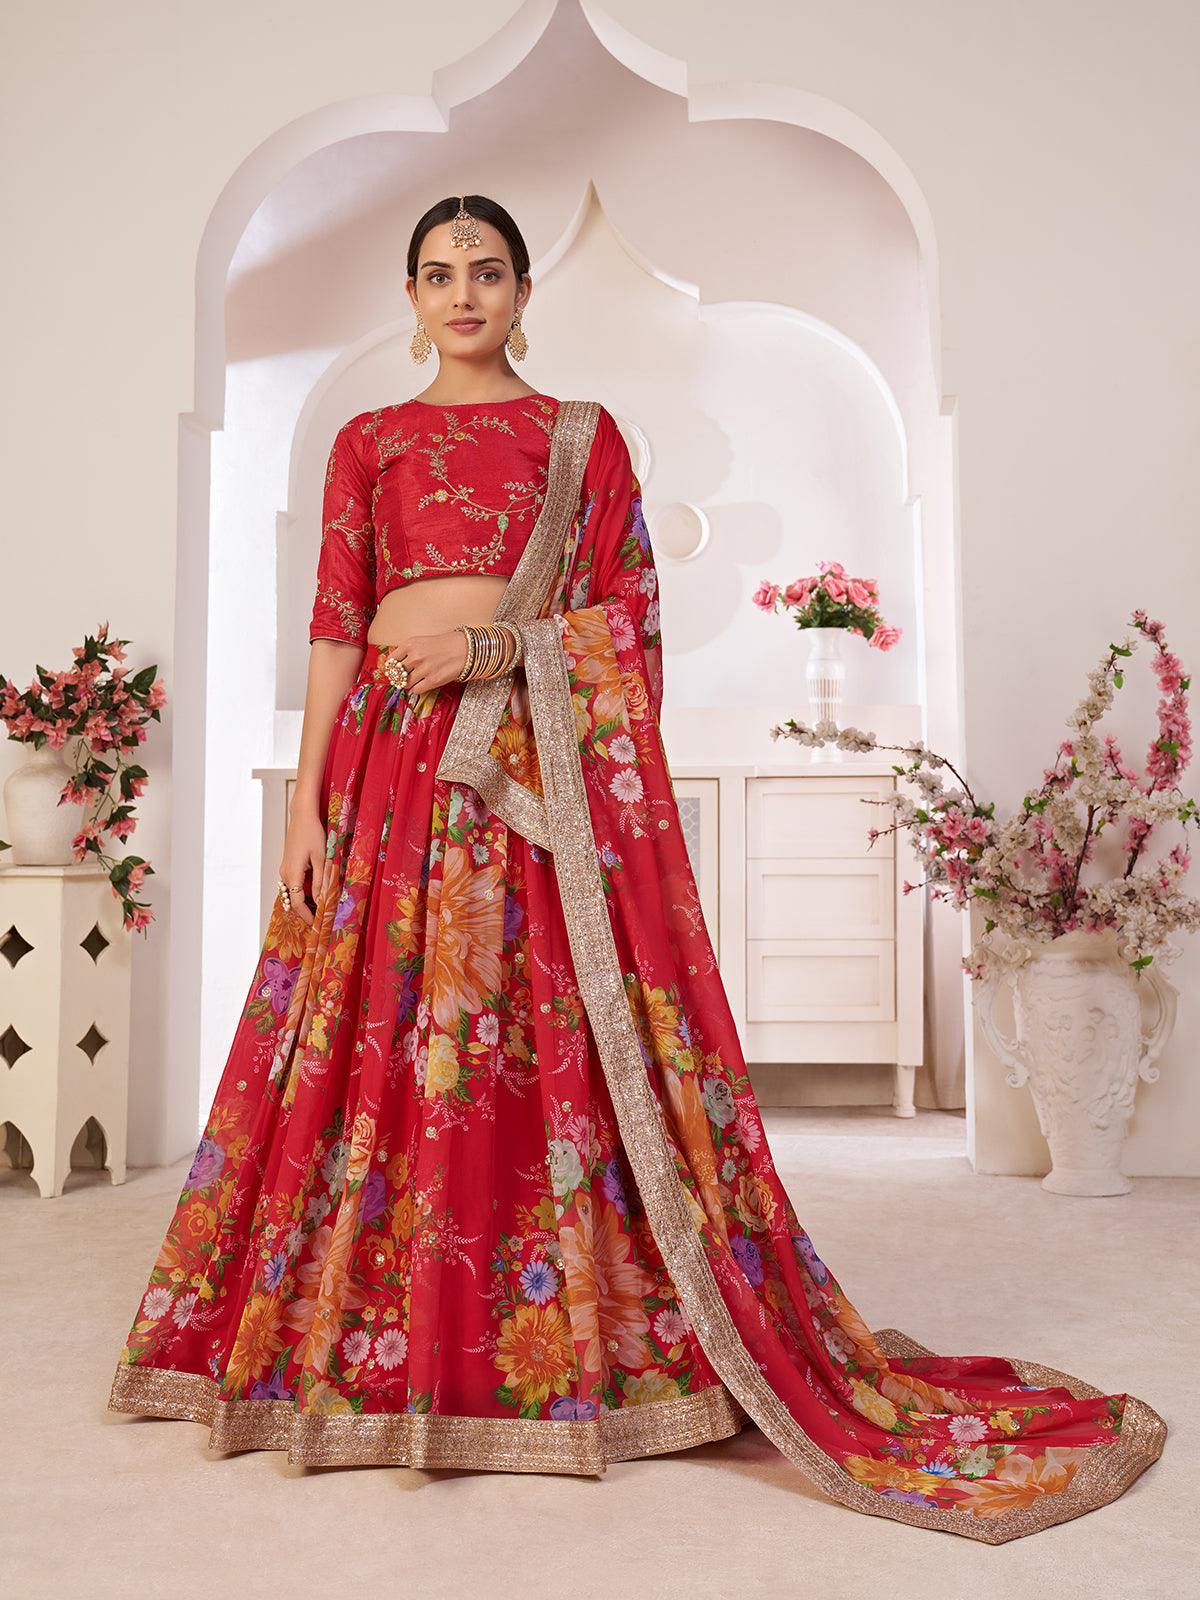 Fully Stitched Designer Indian Reyon Lehenga for Women, Heavy Lehenga, Red  Lehenga, Bridal Lehenga, Heavy Party Wear Lehenga, Ethnic Lehenga - Etsy